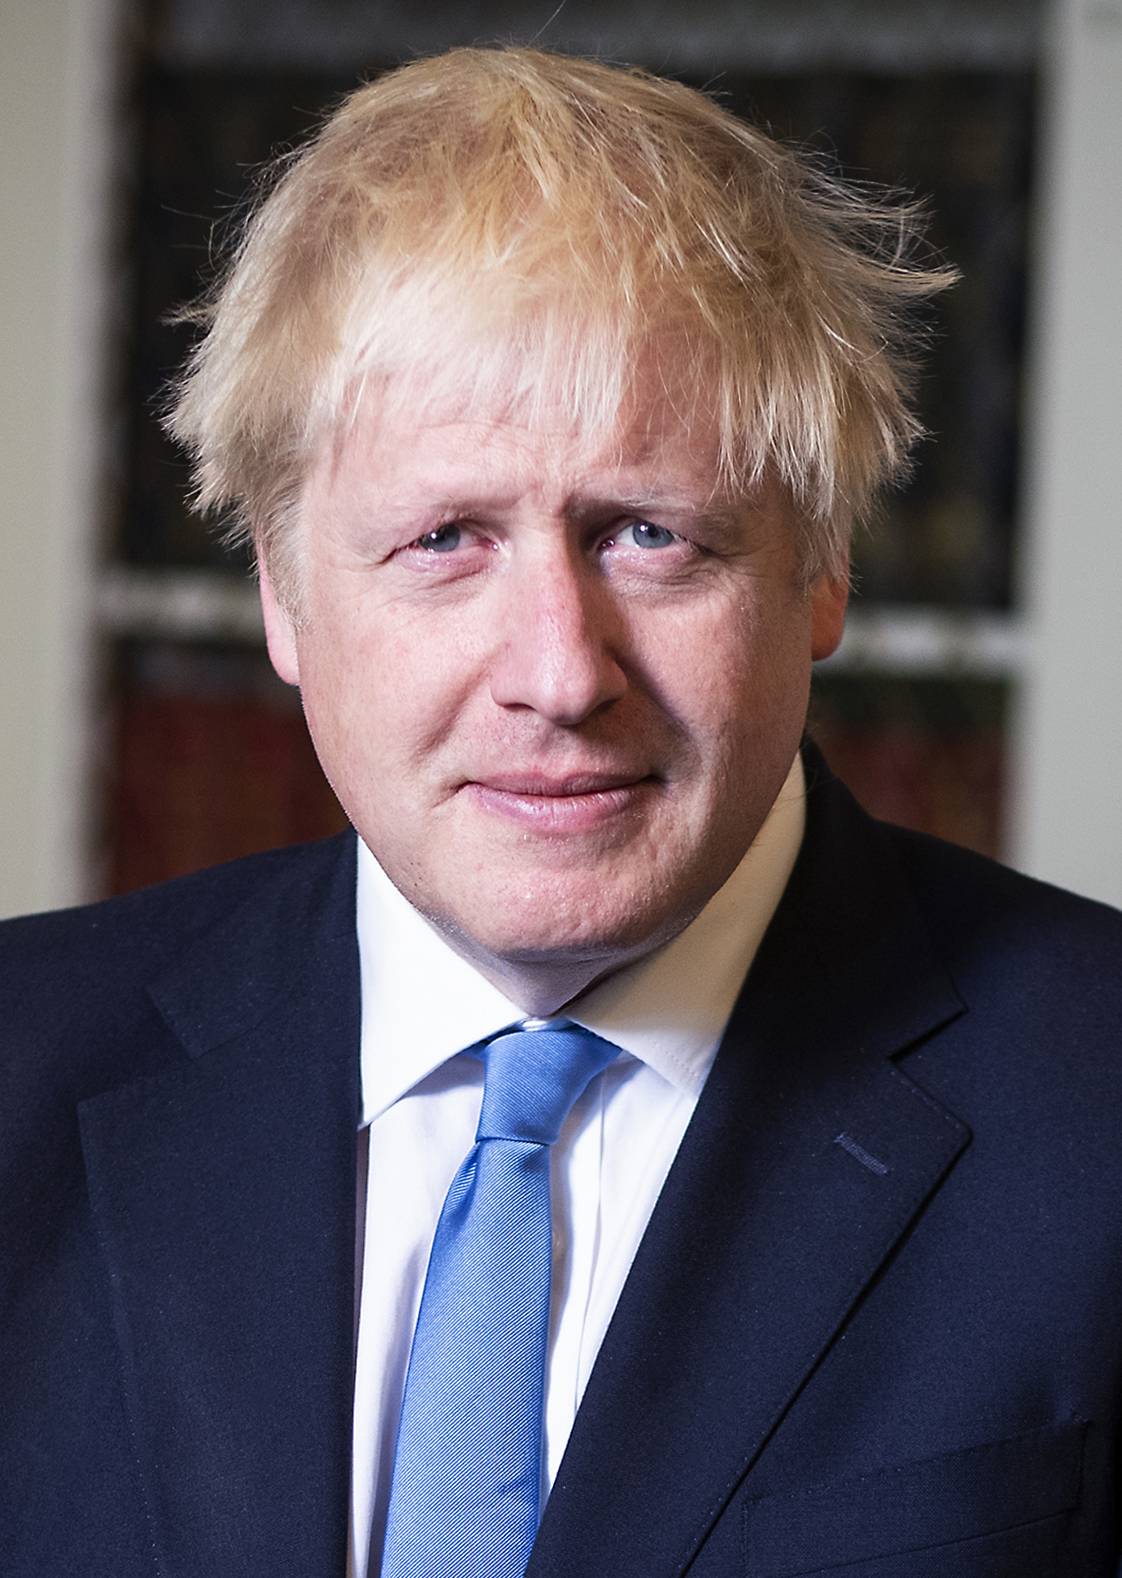 Boris Johnson wins no-confidence vote